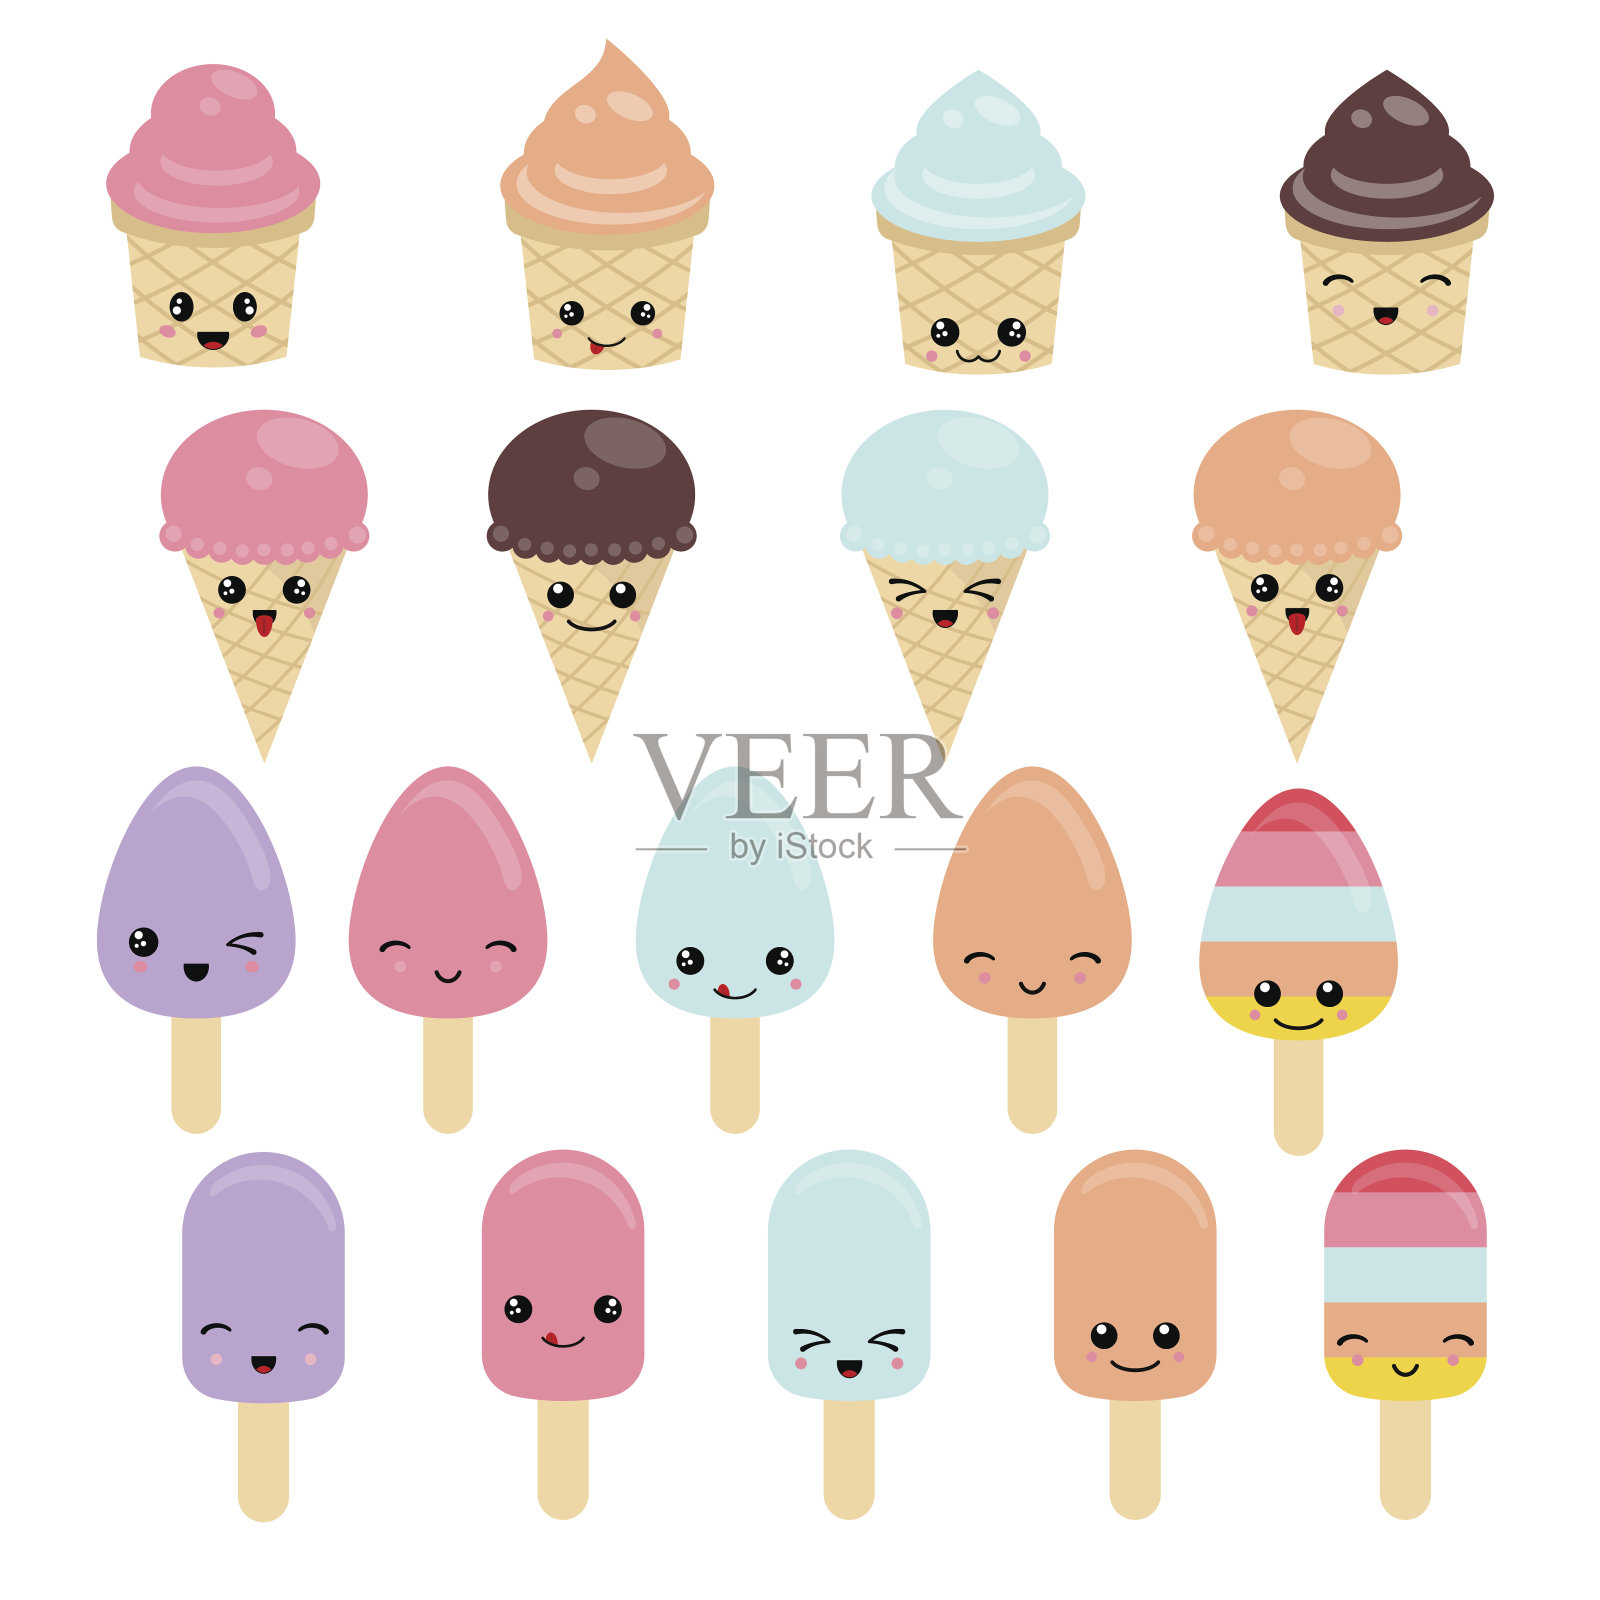 一套冰淇淋插画图片素材